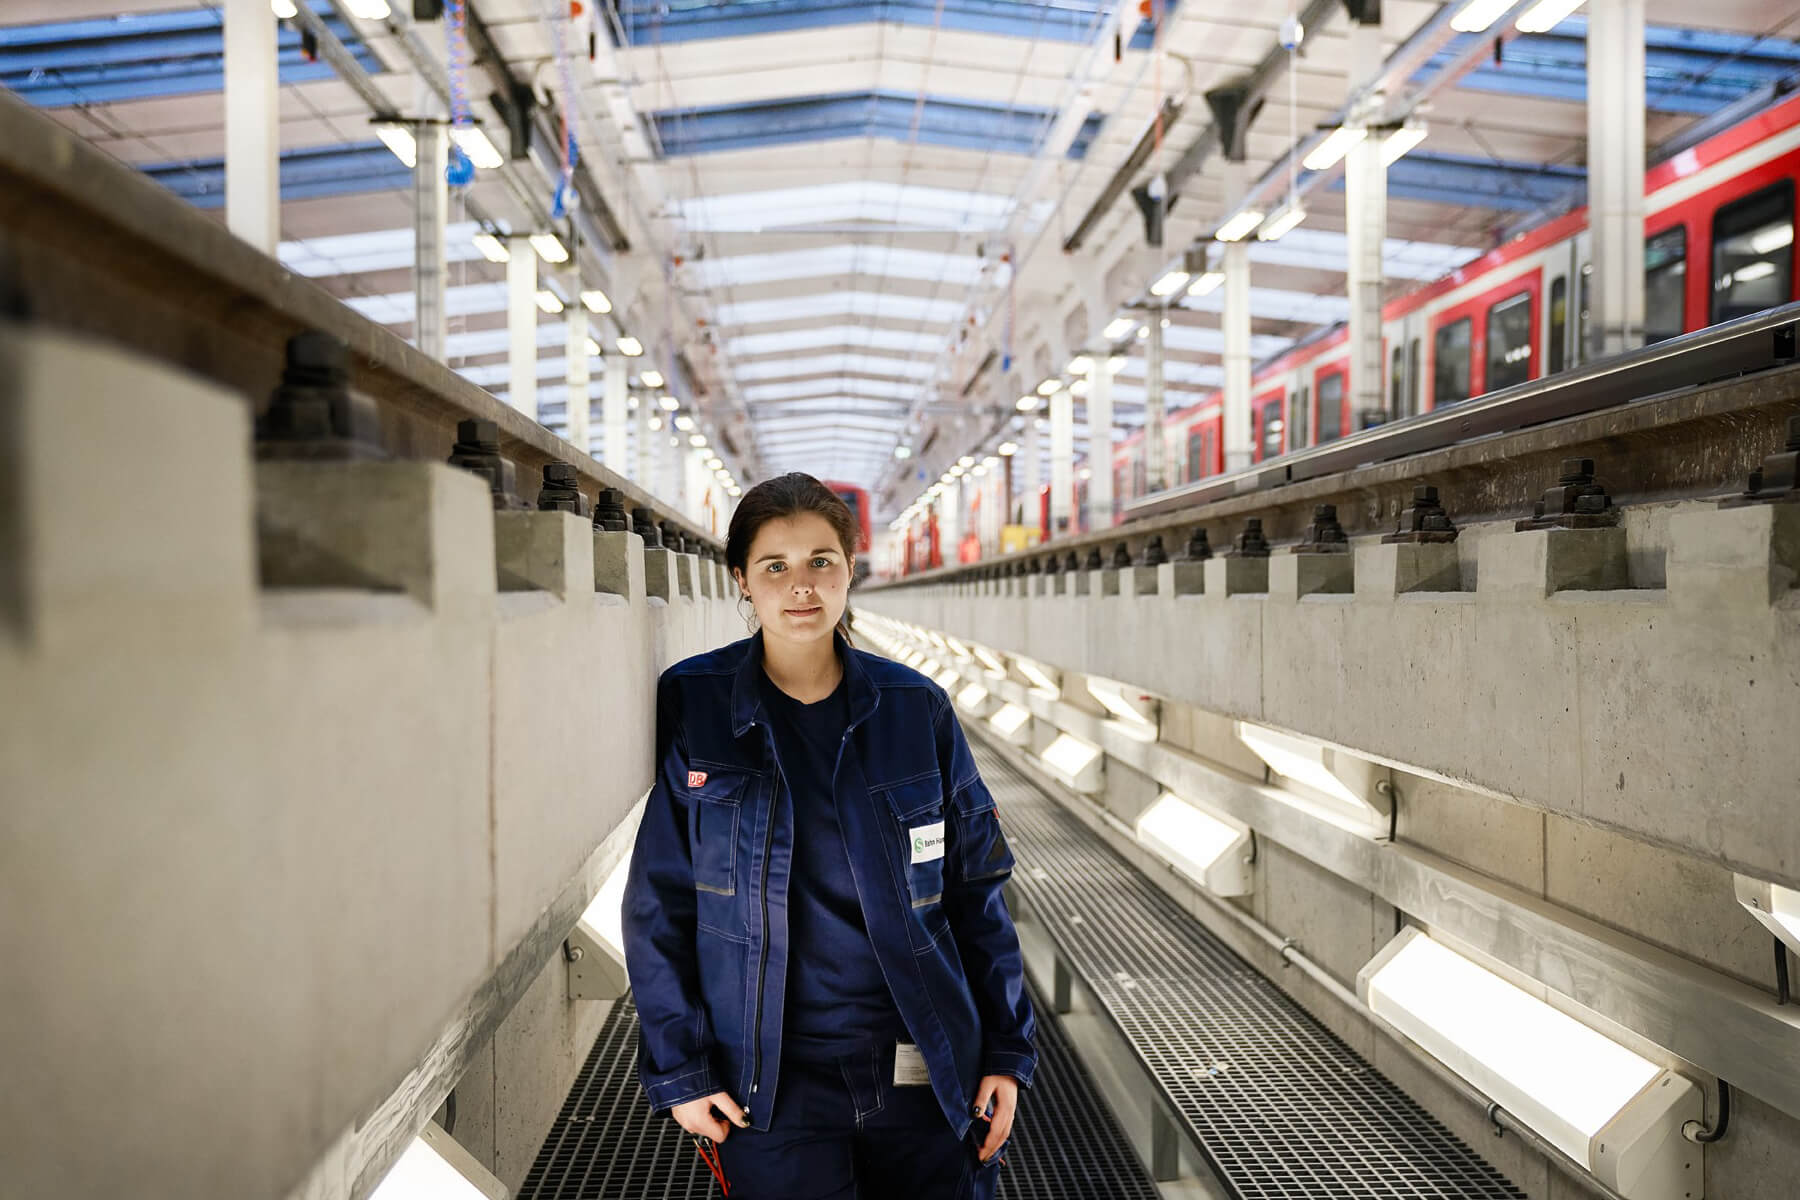 Eine Frau steht in einer Halle mit Zügen im Bereich unterhalb der Gleis. Die Halle ist mit vielen großen Lampen im Decken- und Bodenbereich ausgestattet.